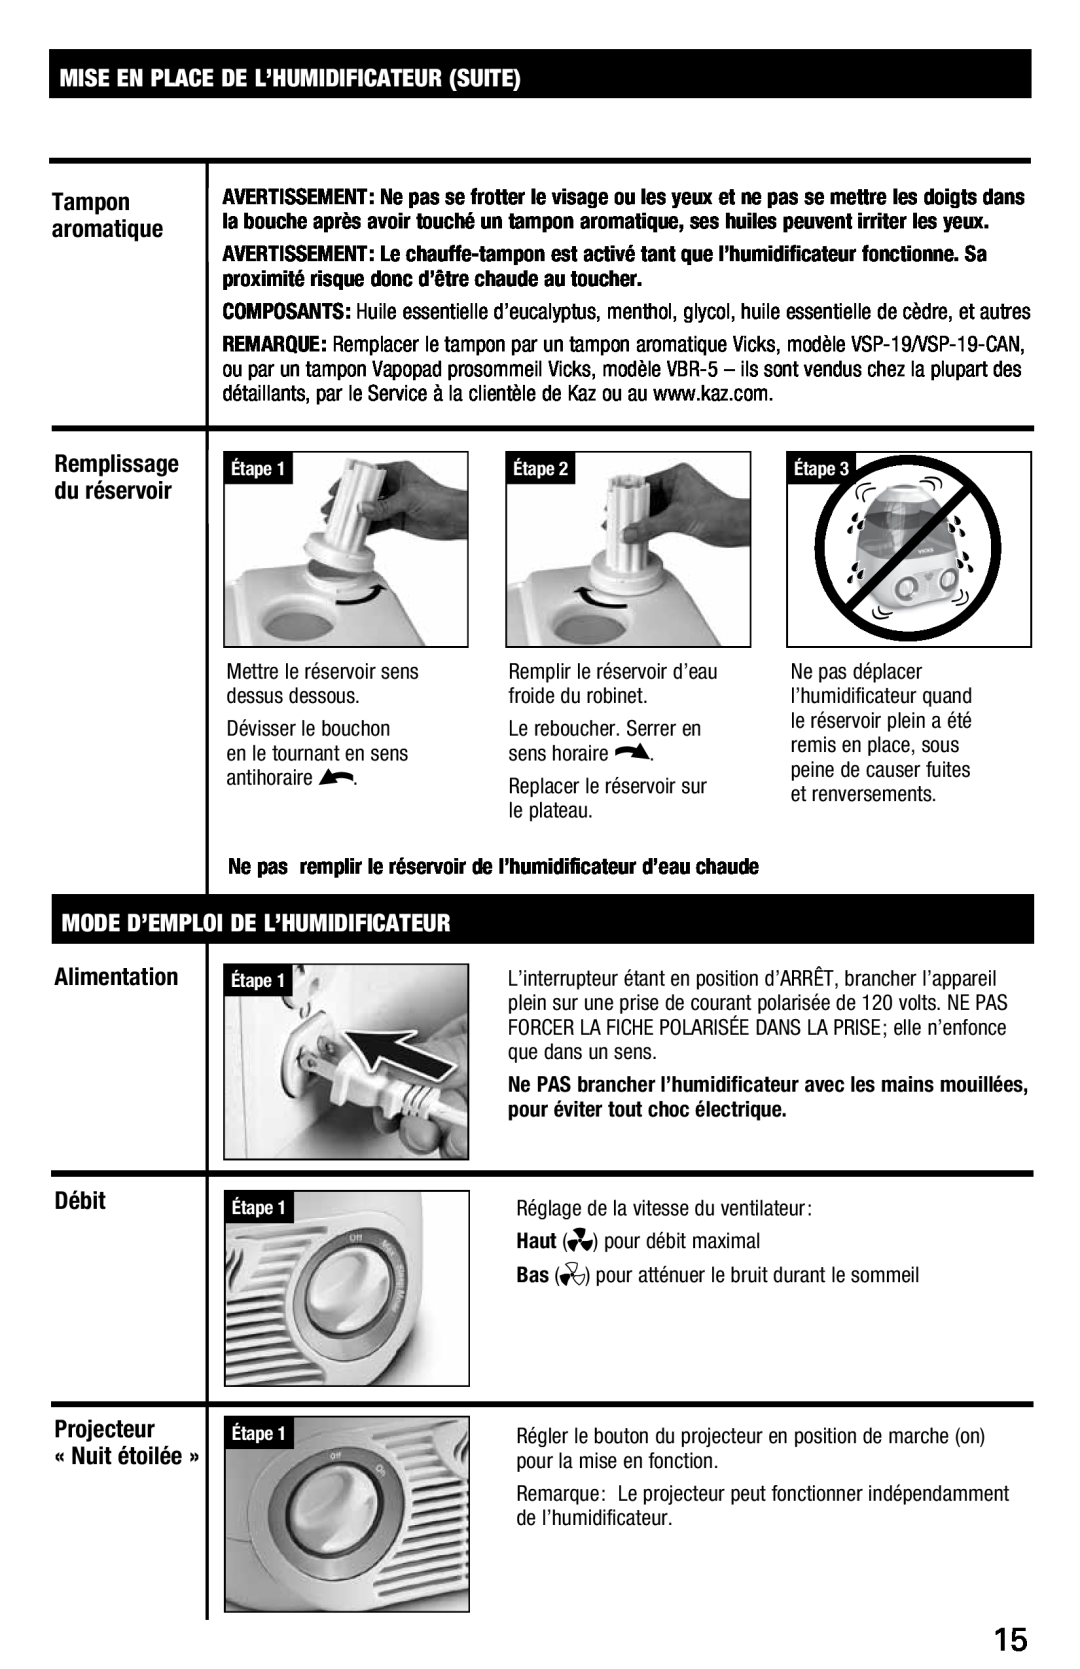 Vicks V3700 manual Mise En Place De L’Humidificateur Suite, Remplissage, du réservoir, Haut, pour la mise en fonction 